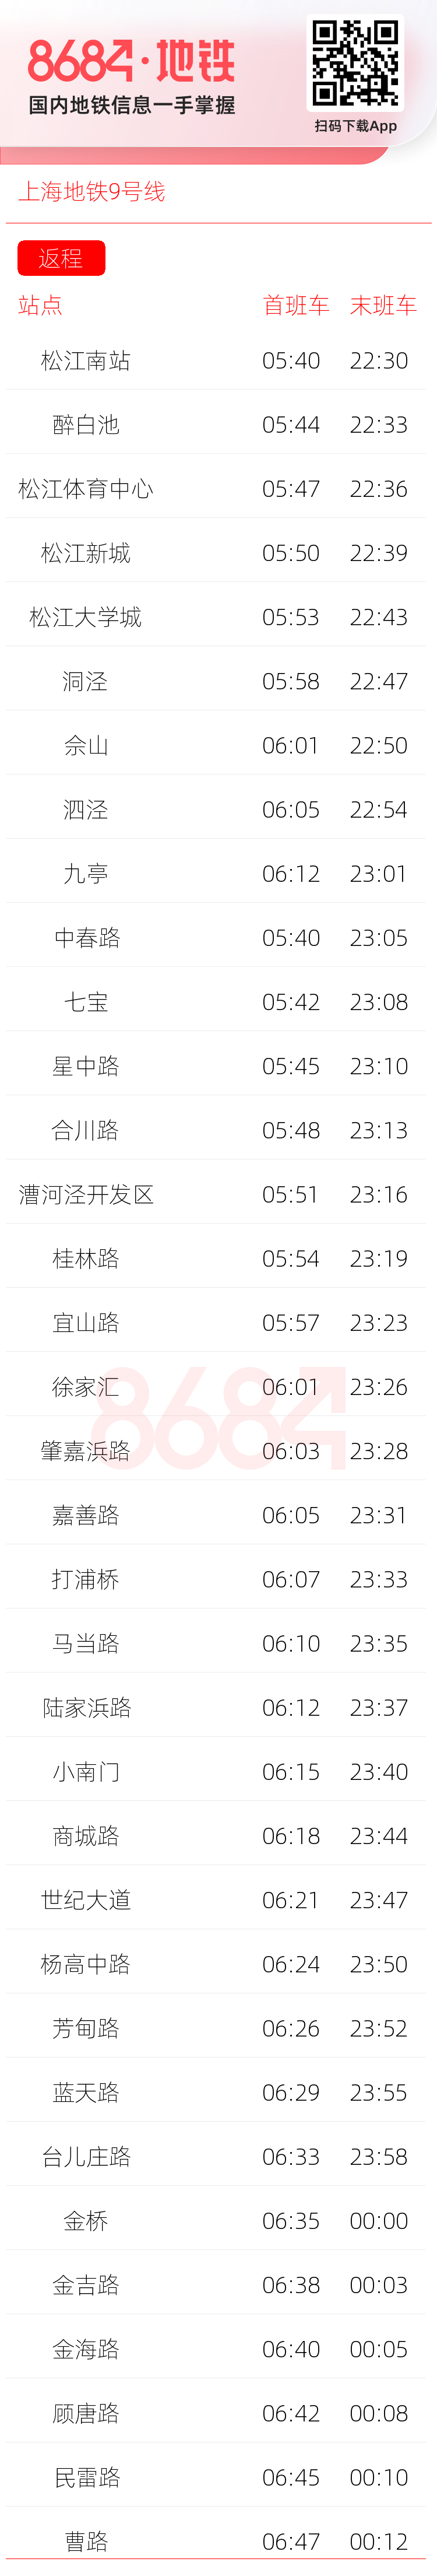 上海地铁9号线运营时间表